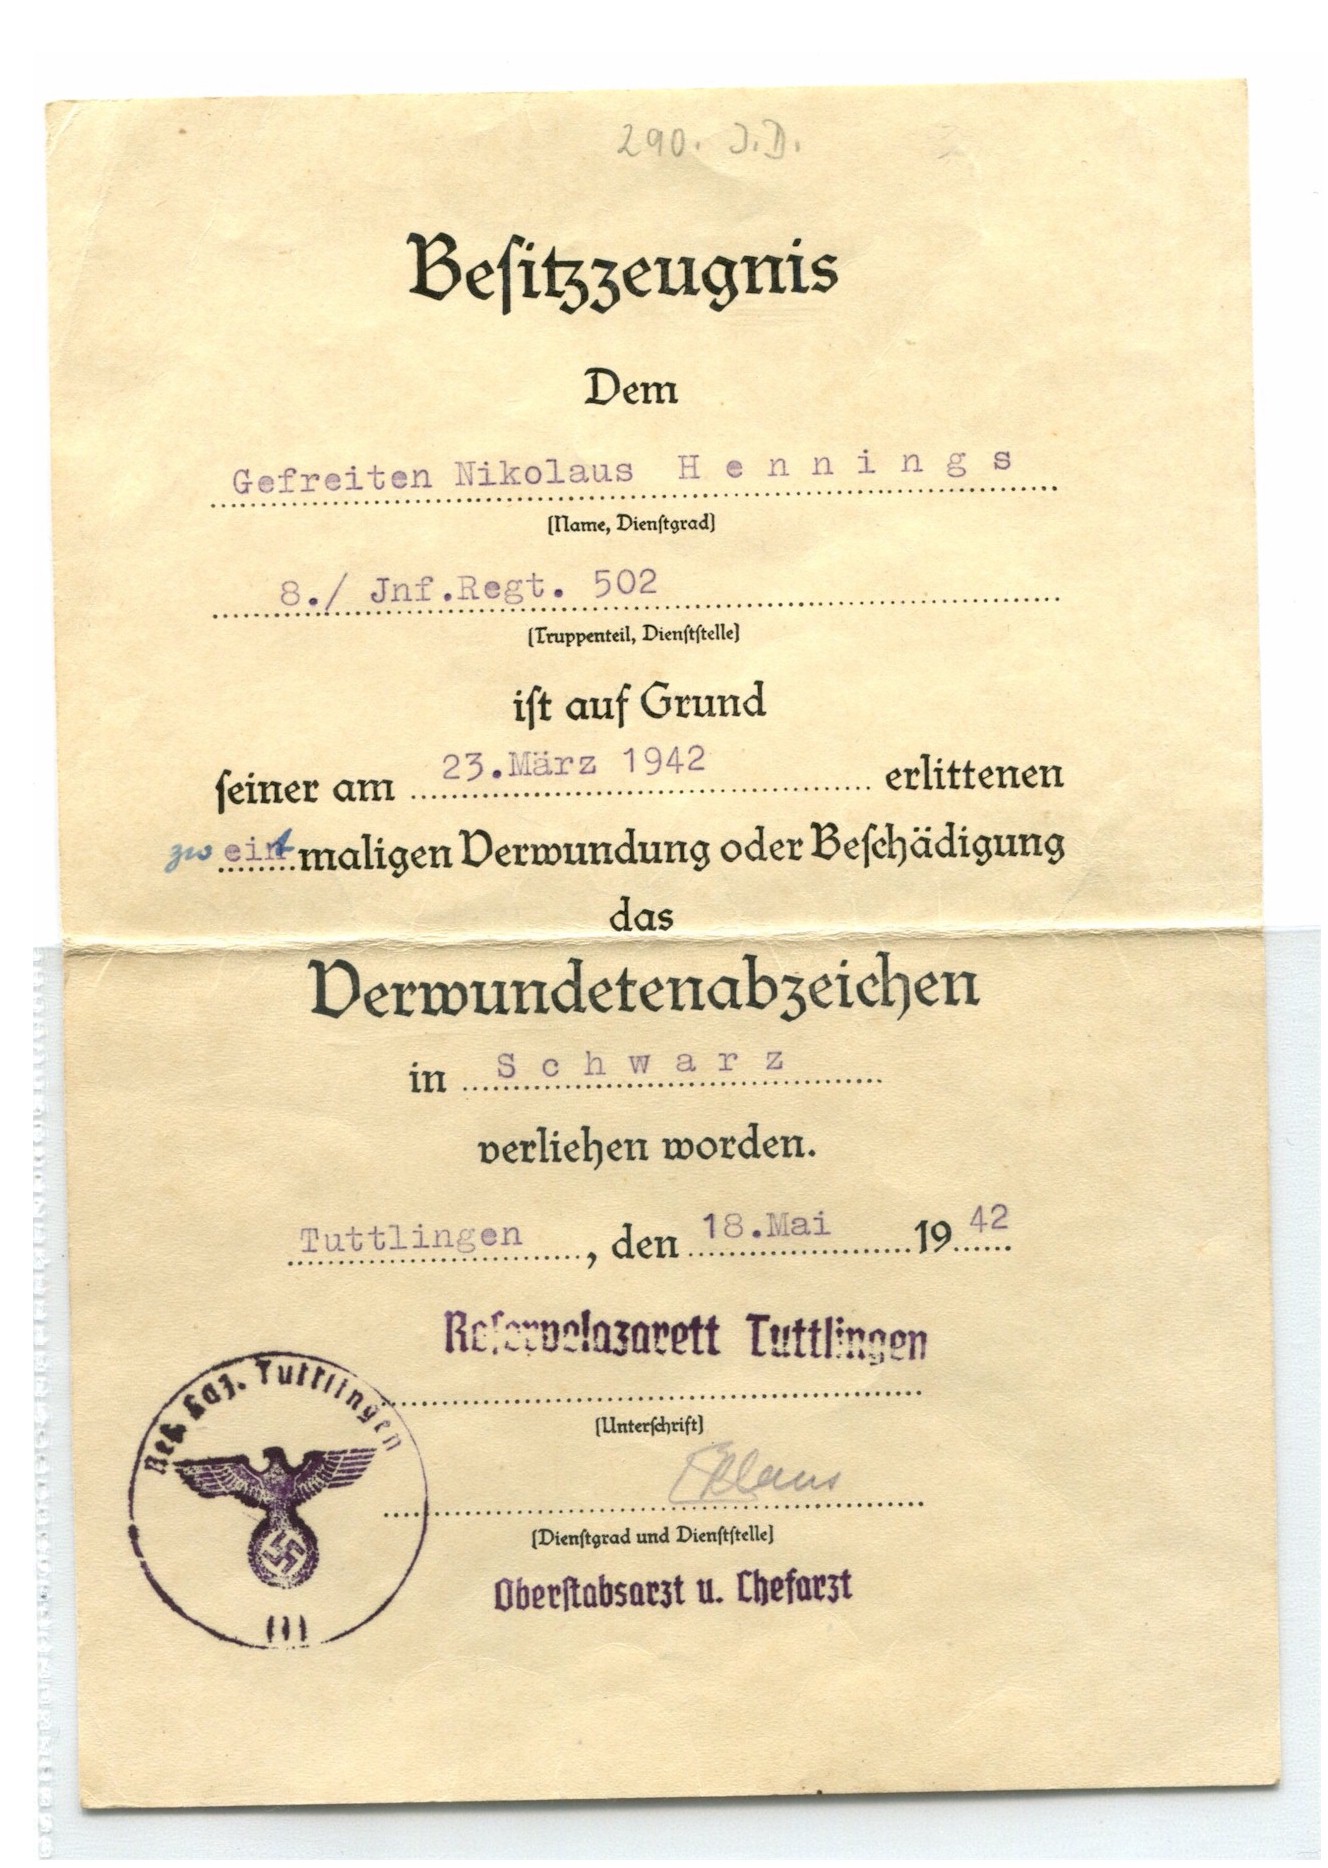 GERMAN AWARD DOCUMENT DERMUNDETENABZEICHEN #2 